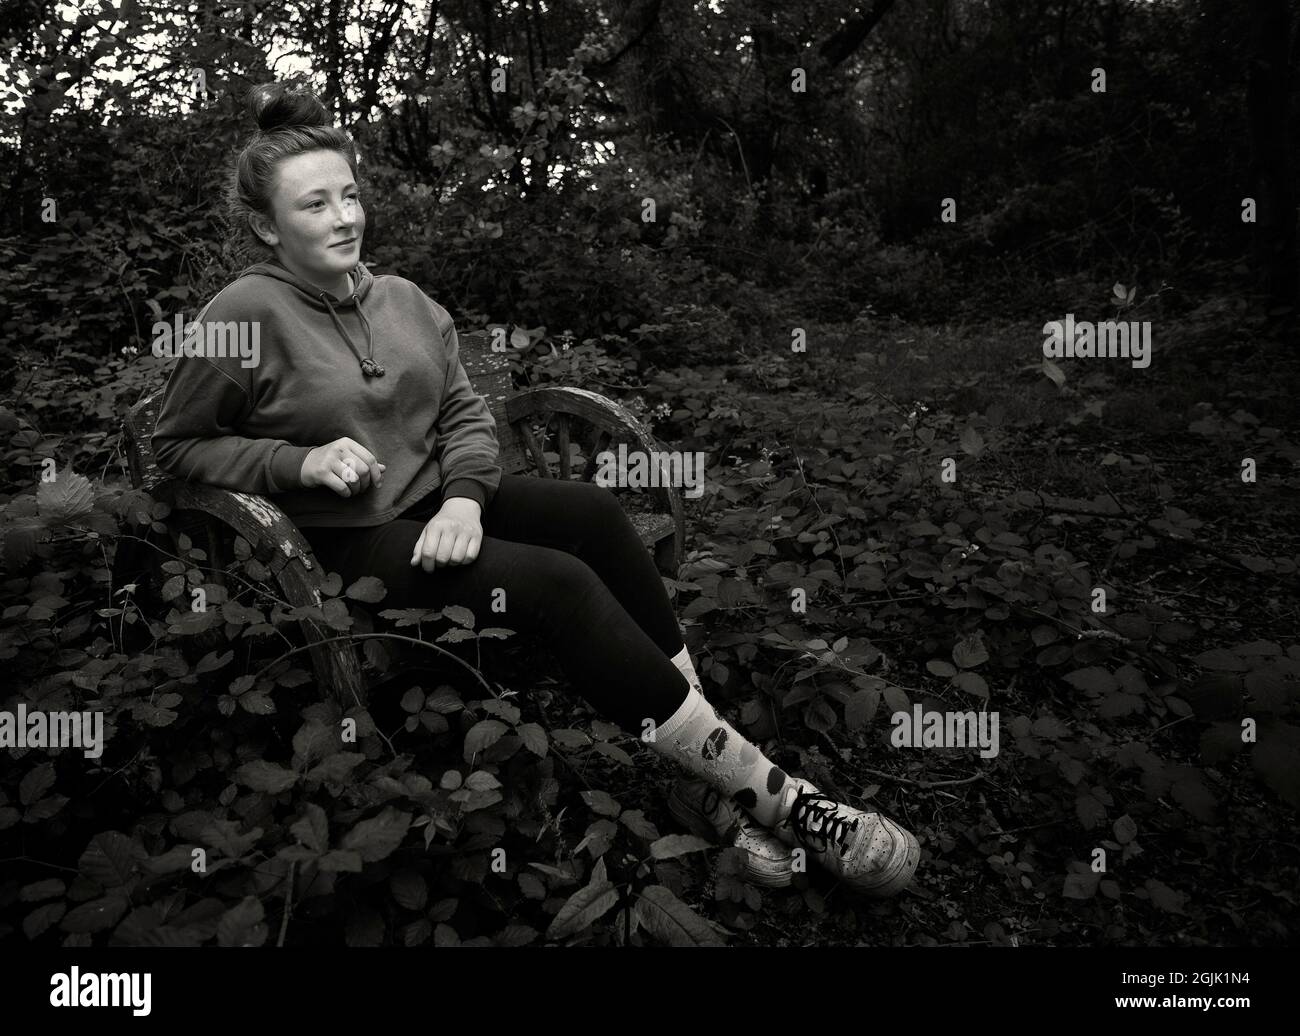 Jeune fille d'âge se reposant sur un bebch dans les bois Banque D'Images